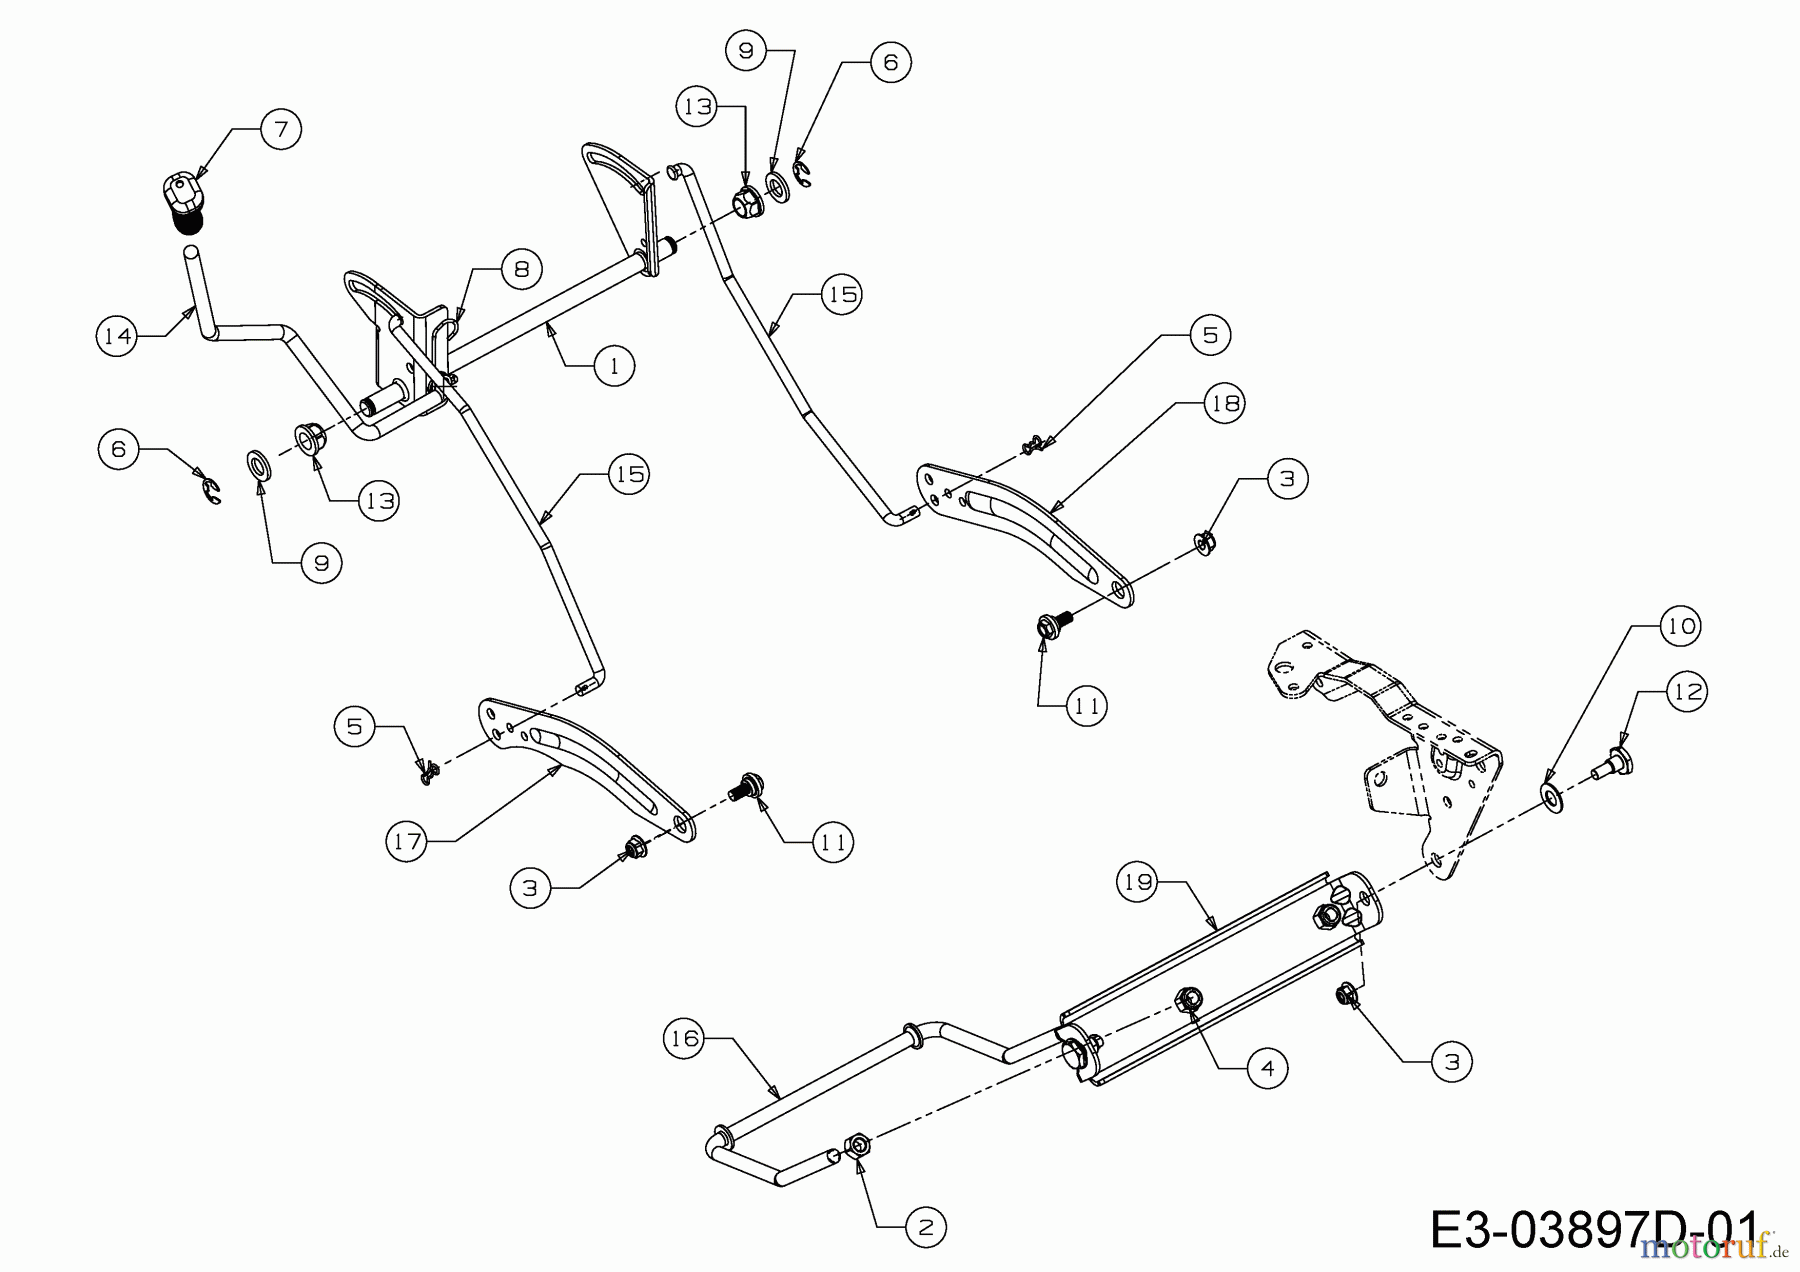  Dormak Tracteurs de pelouse TX 36 T 13HH76SE699  (2017) Relevage plateau de coupe